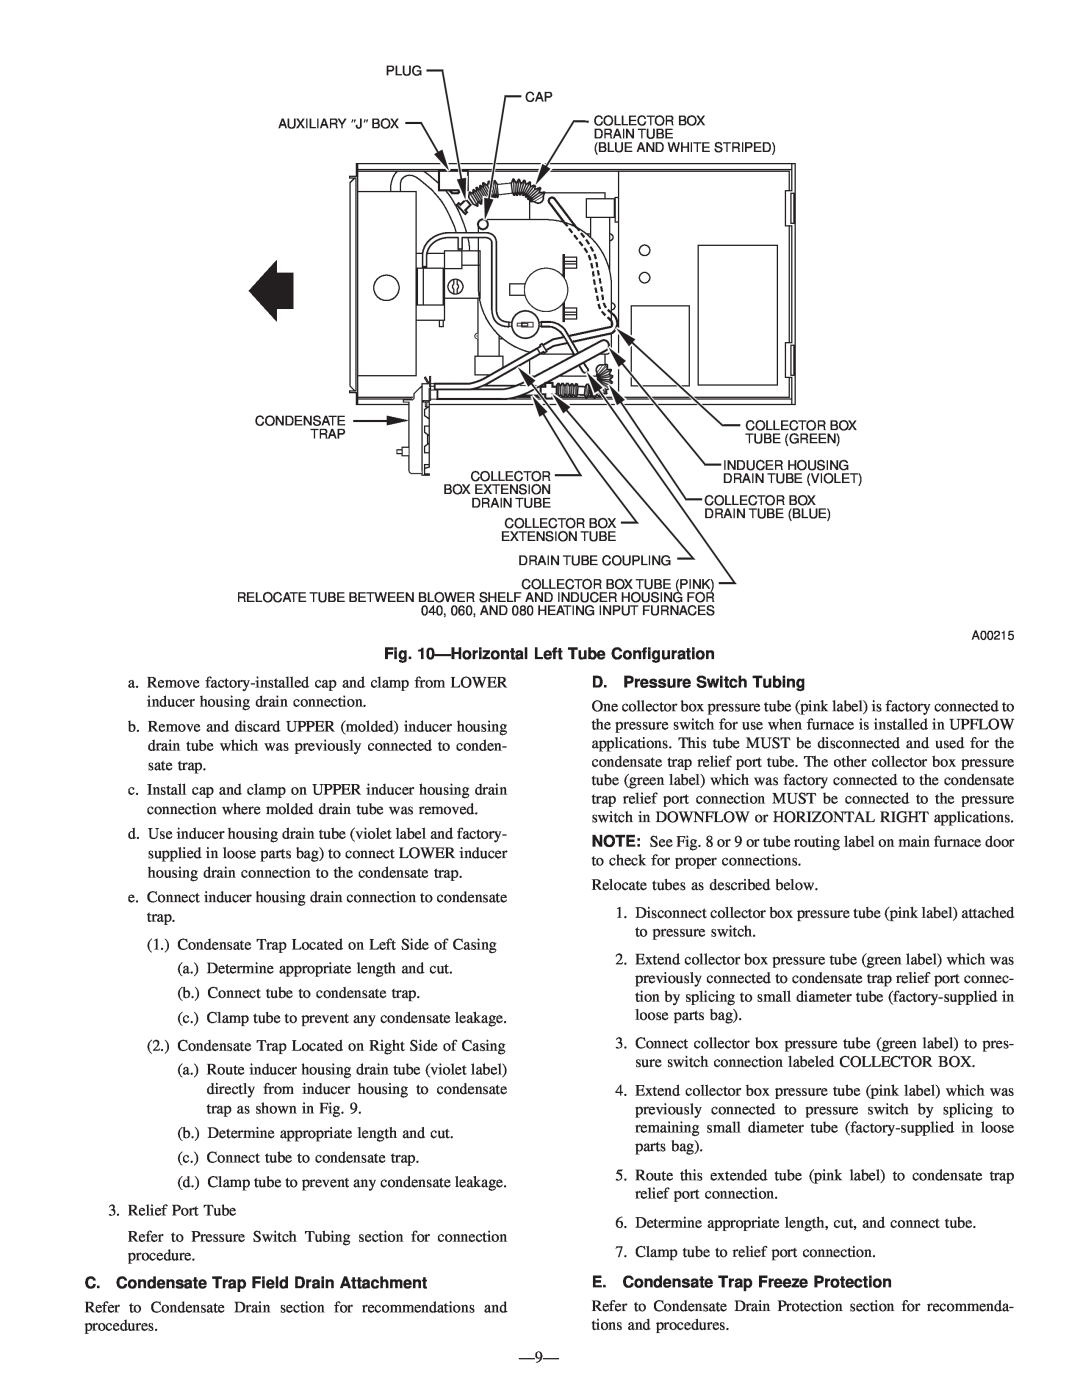 Bryant 340MAV HorizontalLeft Tube Configuration, C.Condensate Trap Field Drain Attachment, D. Pressure Switch Tubing 